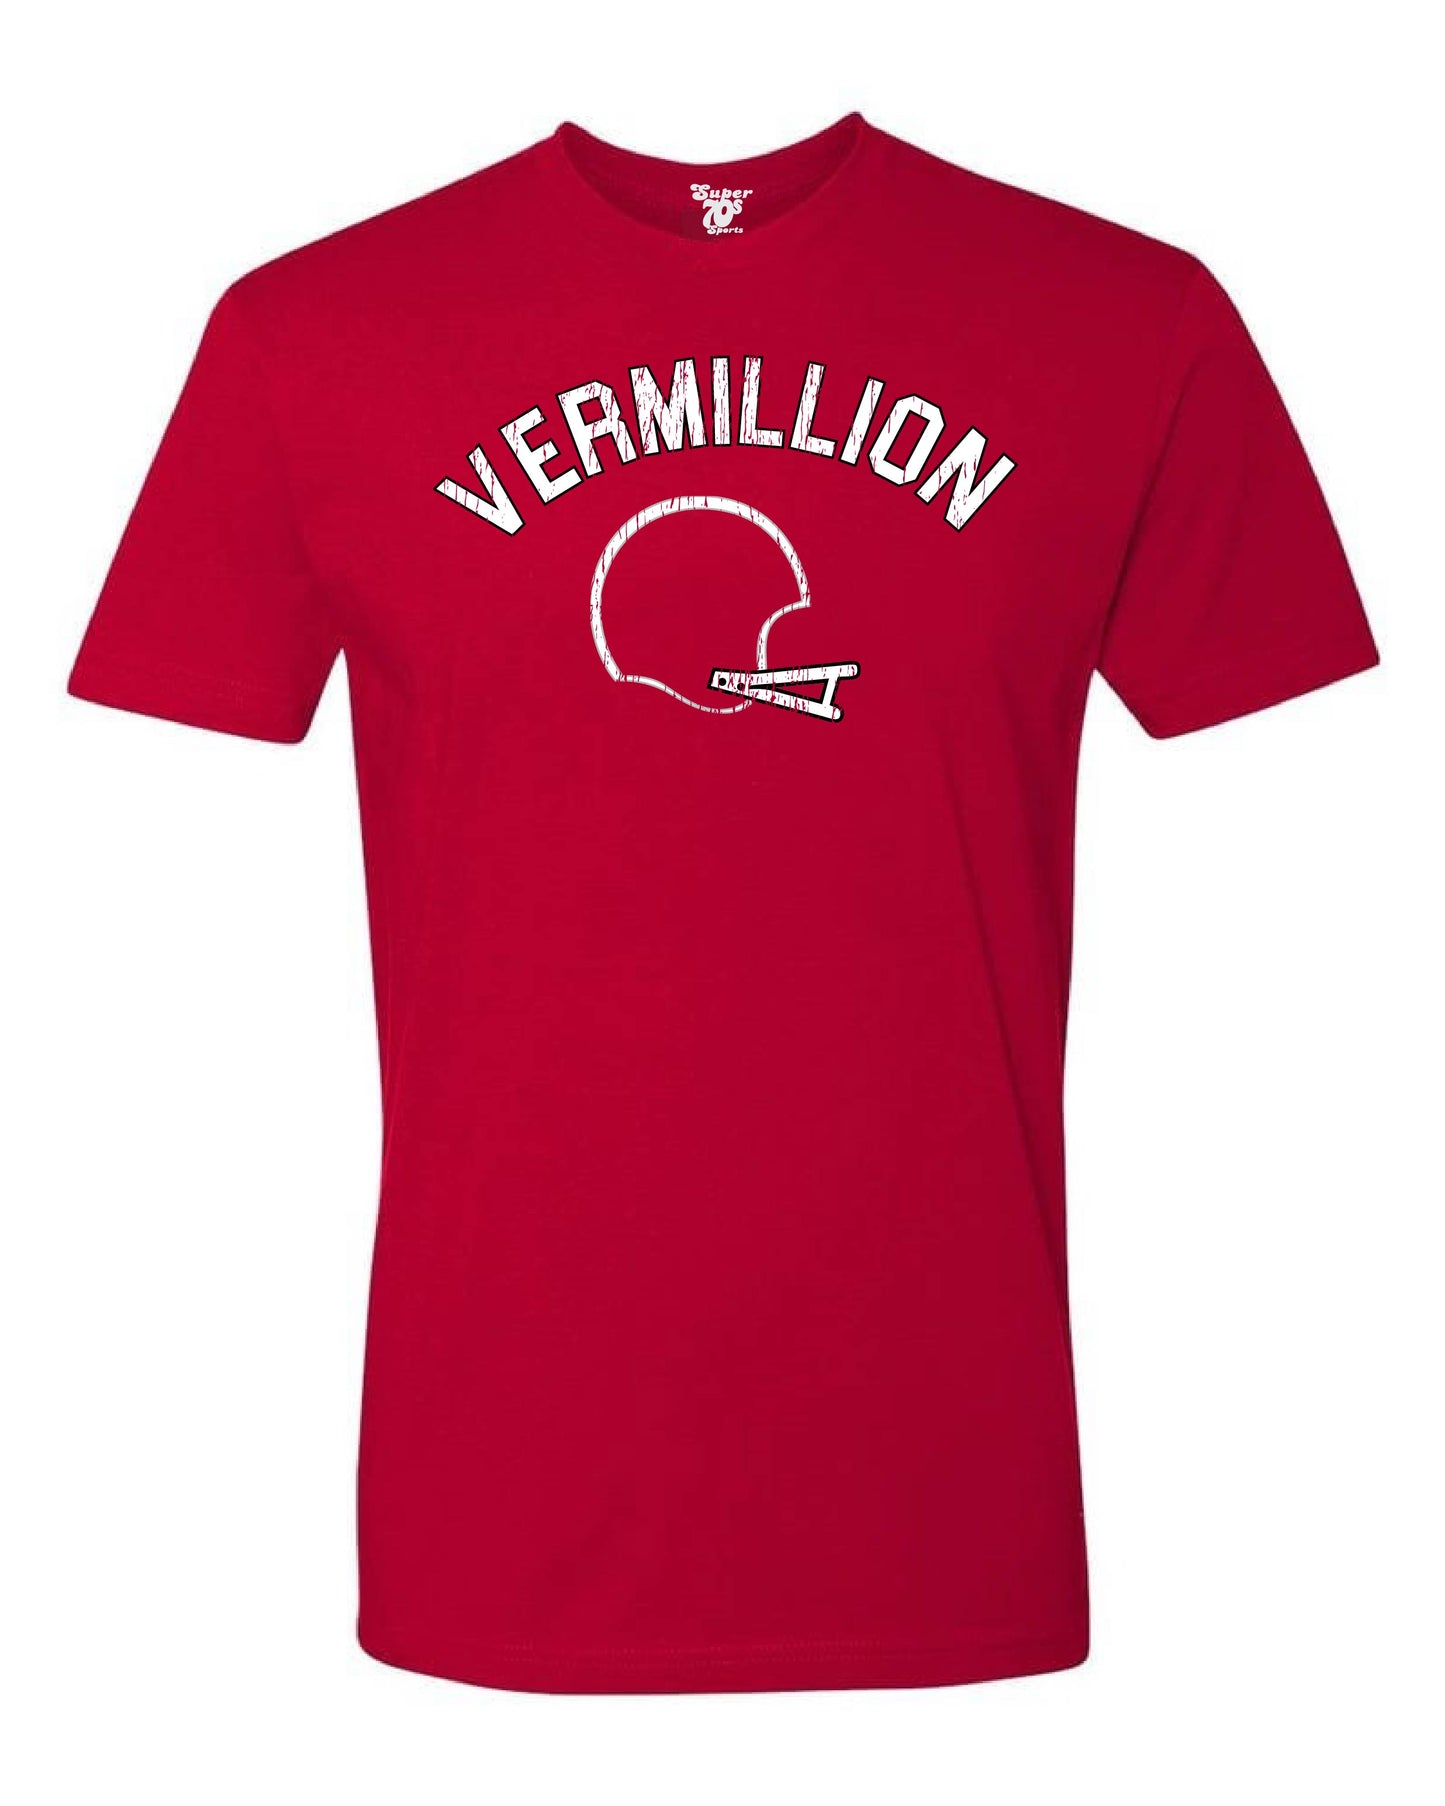 Vermillion Football Tee